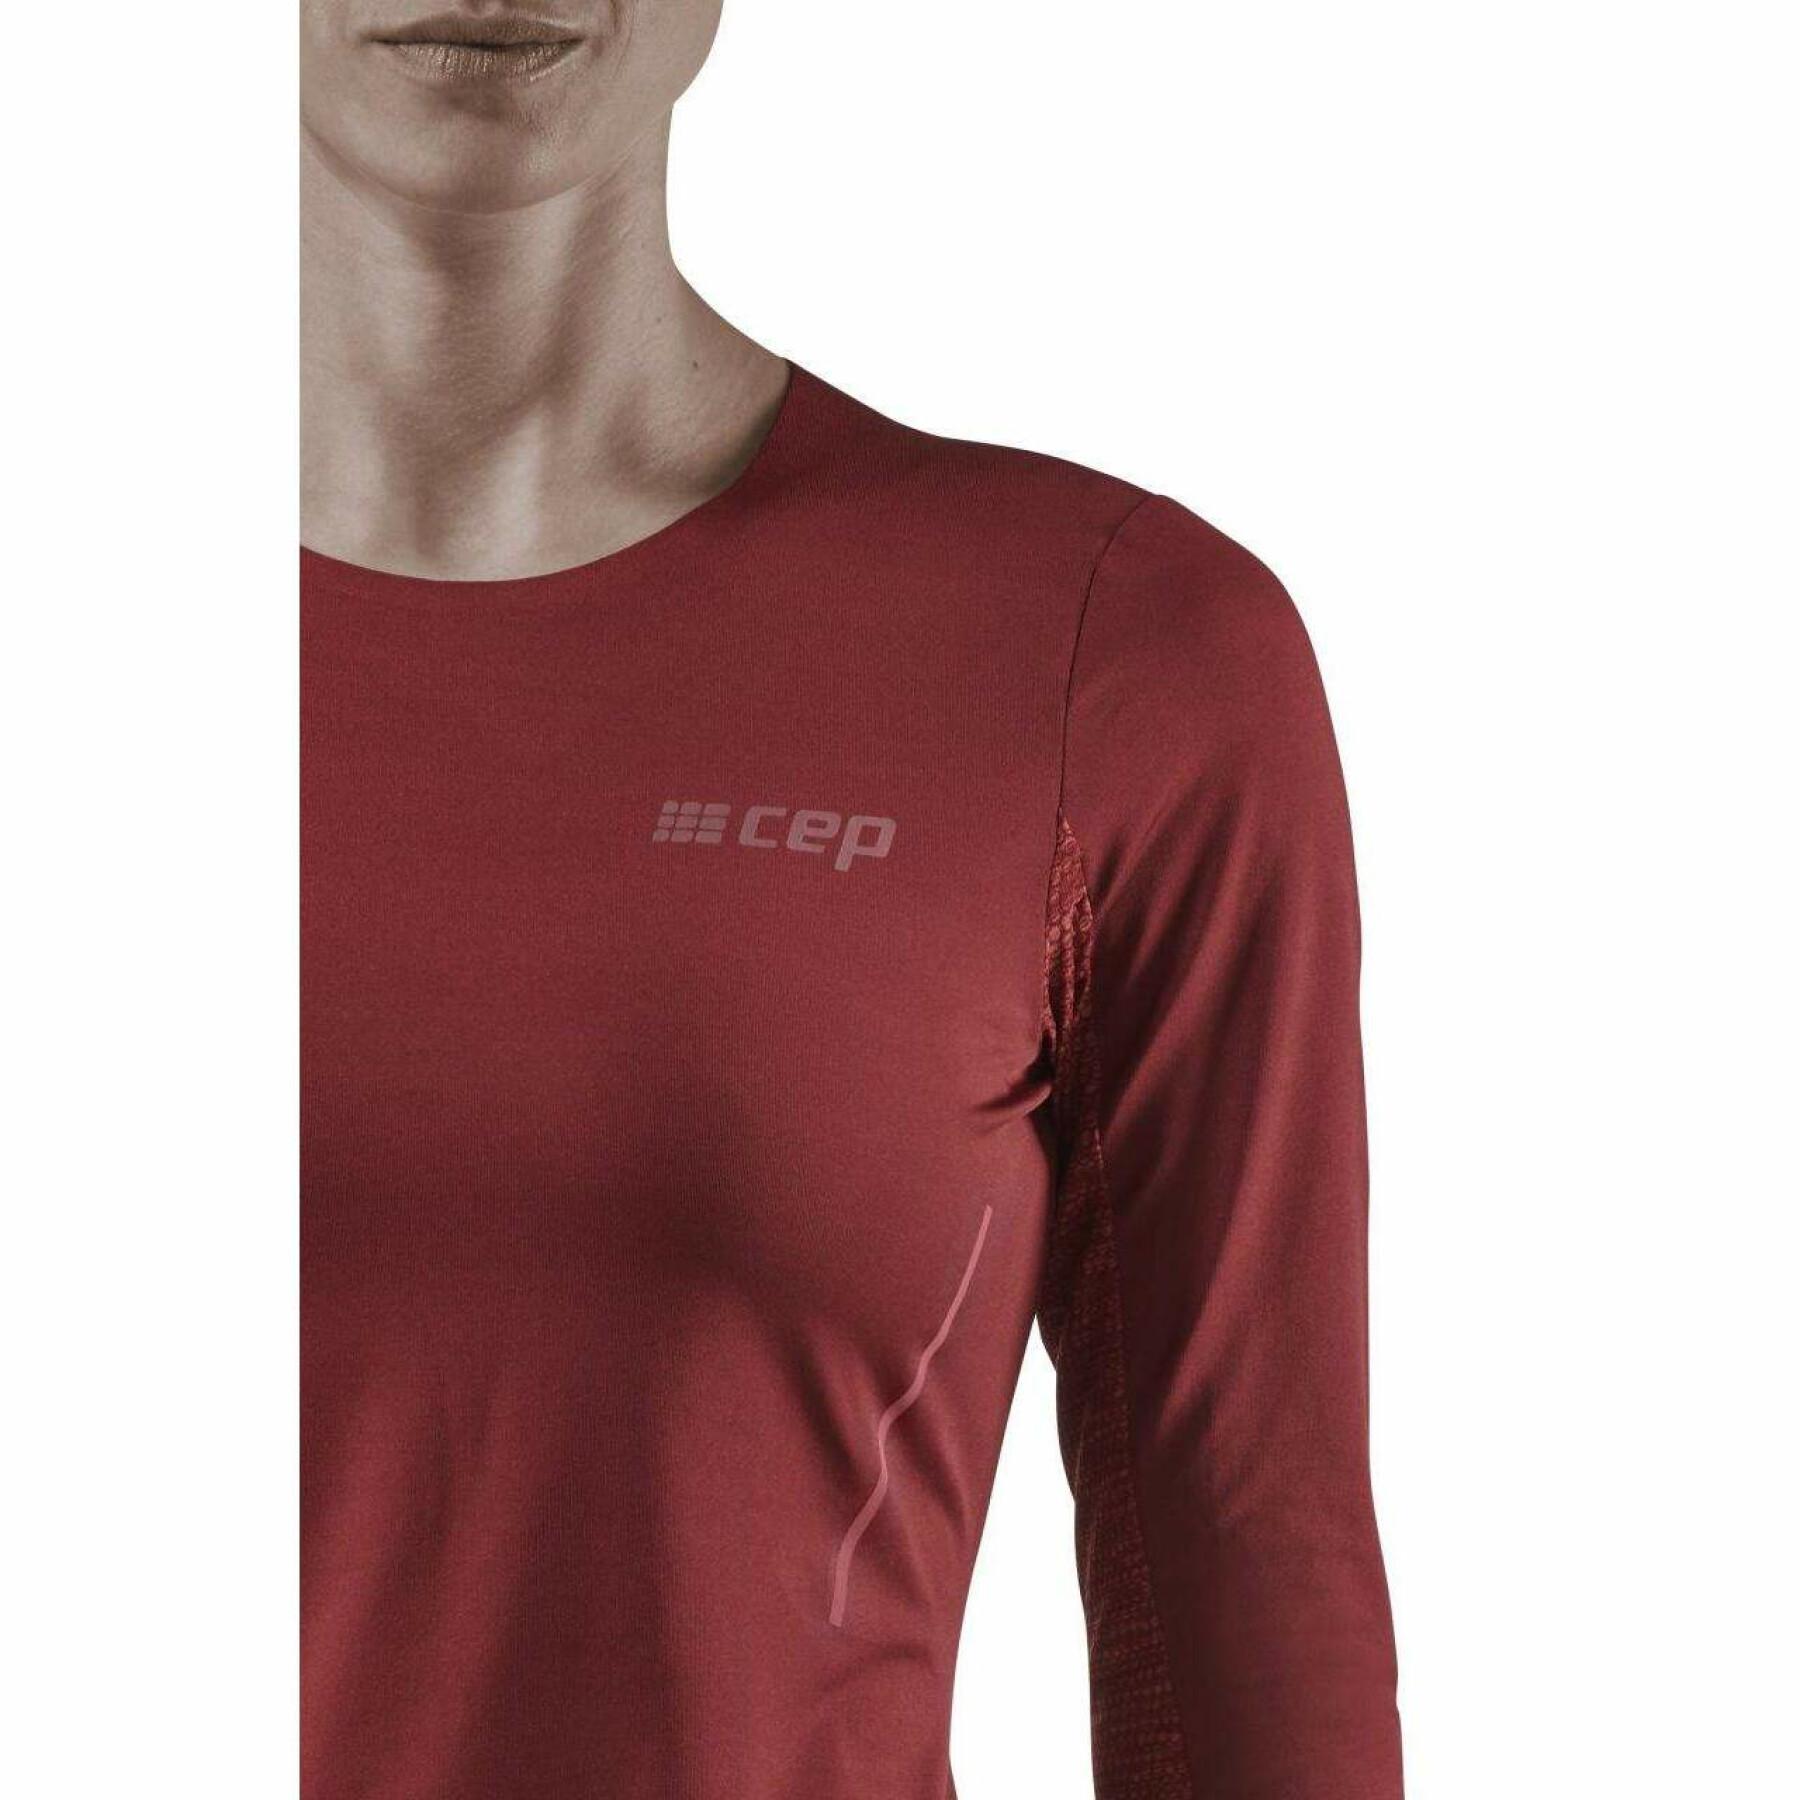 Camisa de manga comprida para mulheres CEP Compression